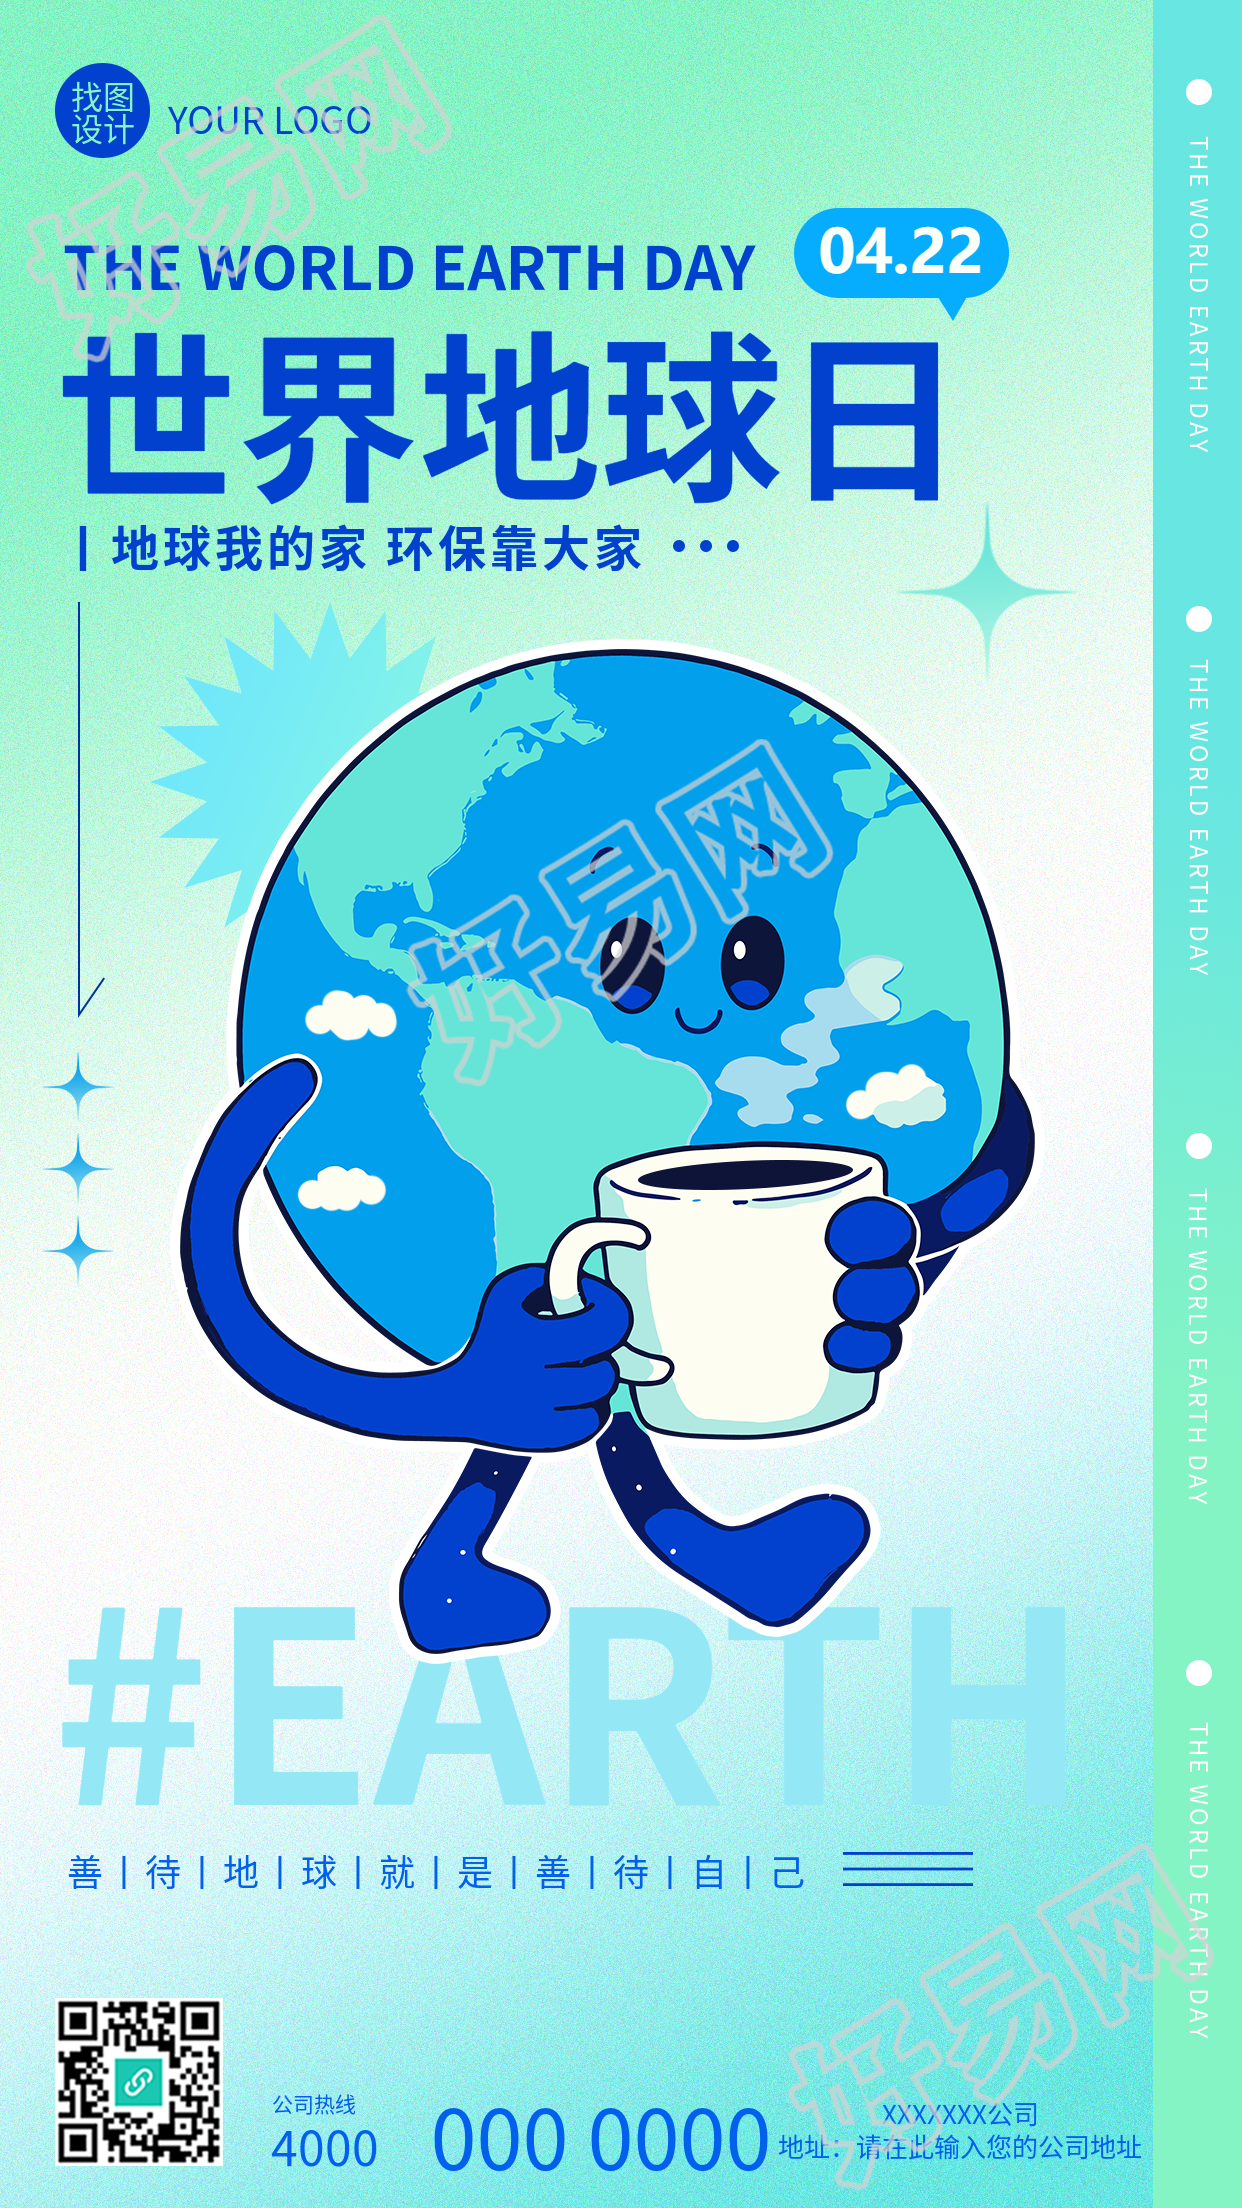 世界地球日主题活动宣传手机海报